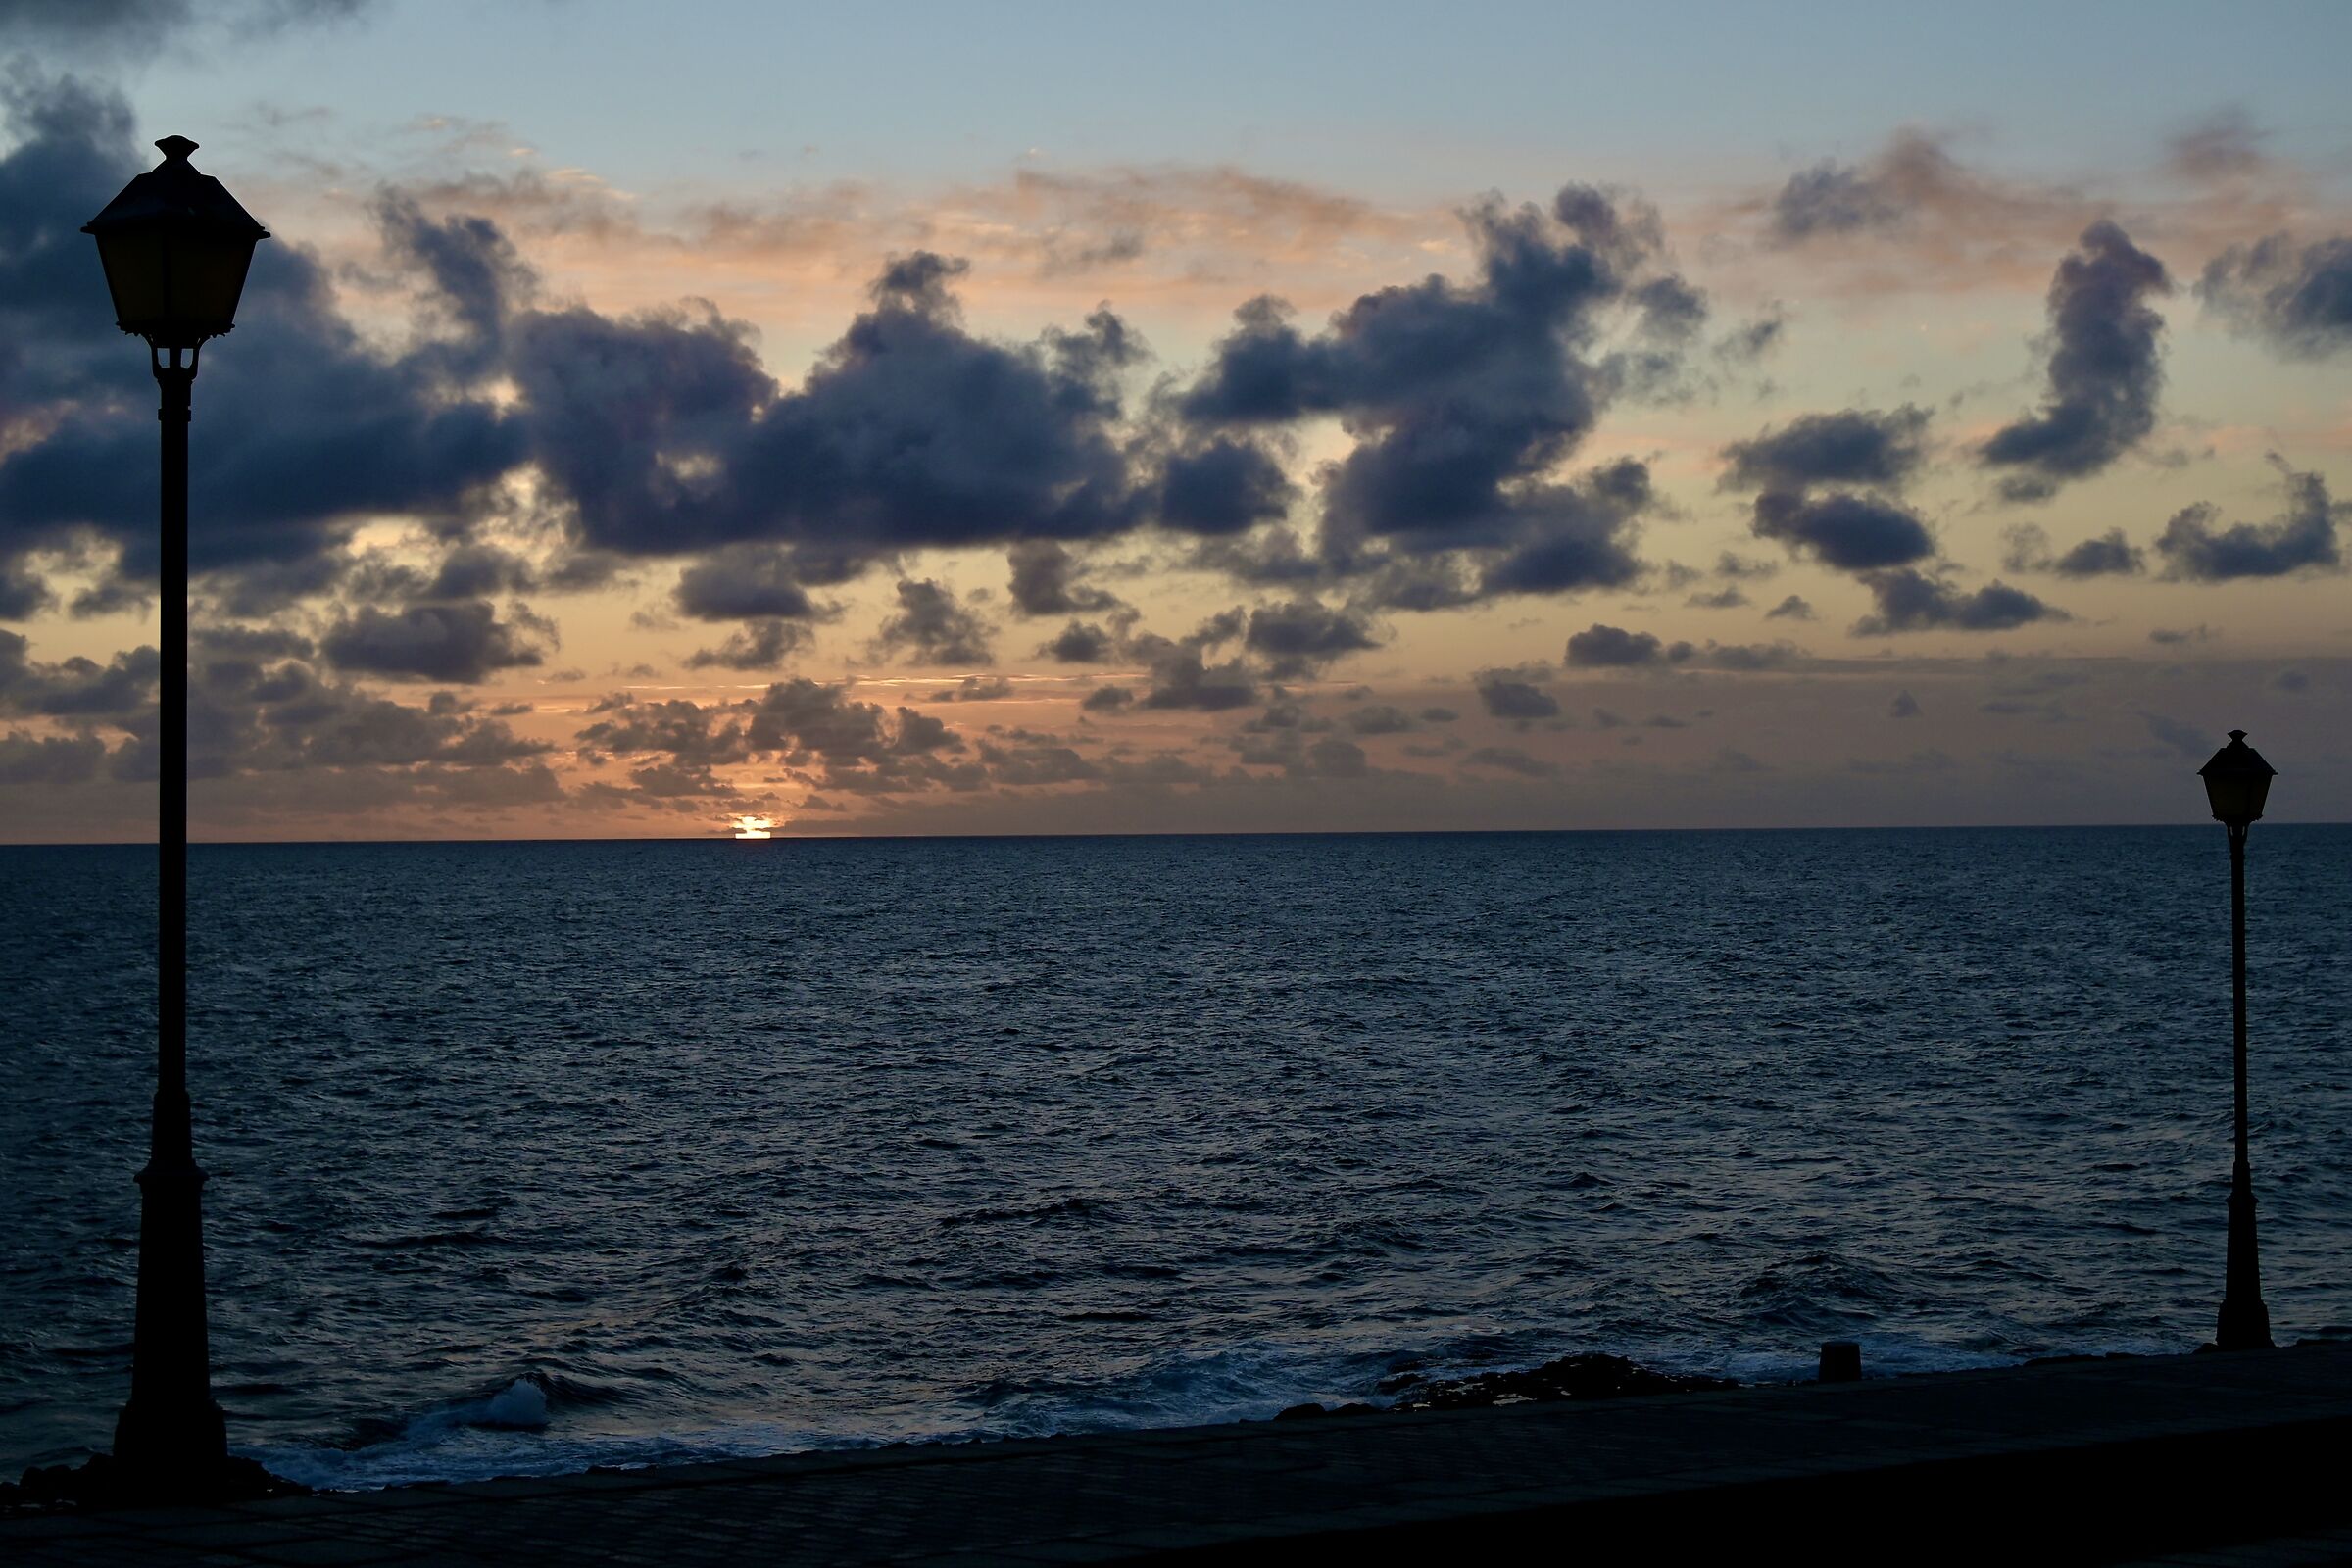 Sunrise in Fuerteventura ...